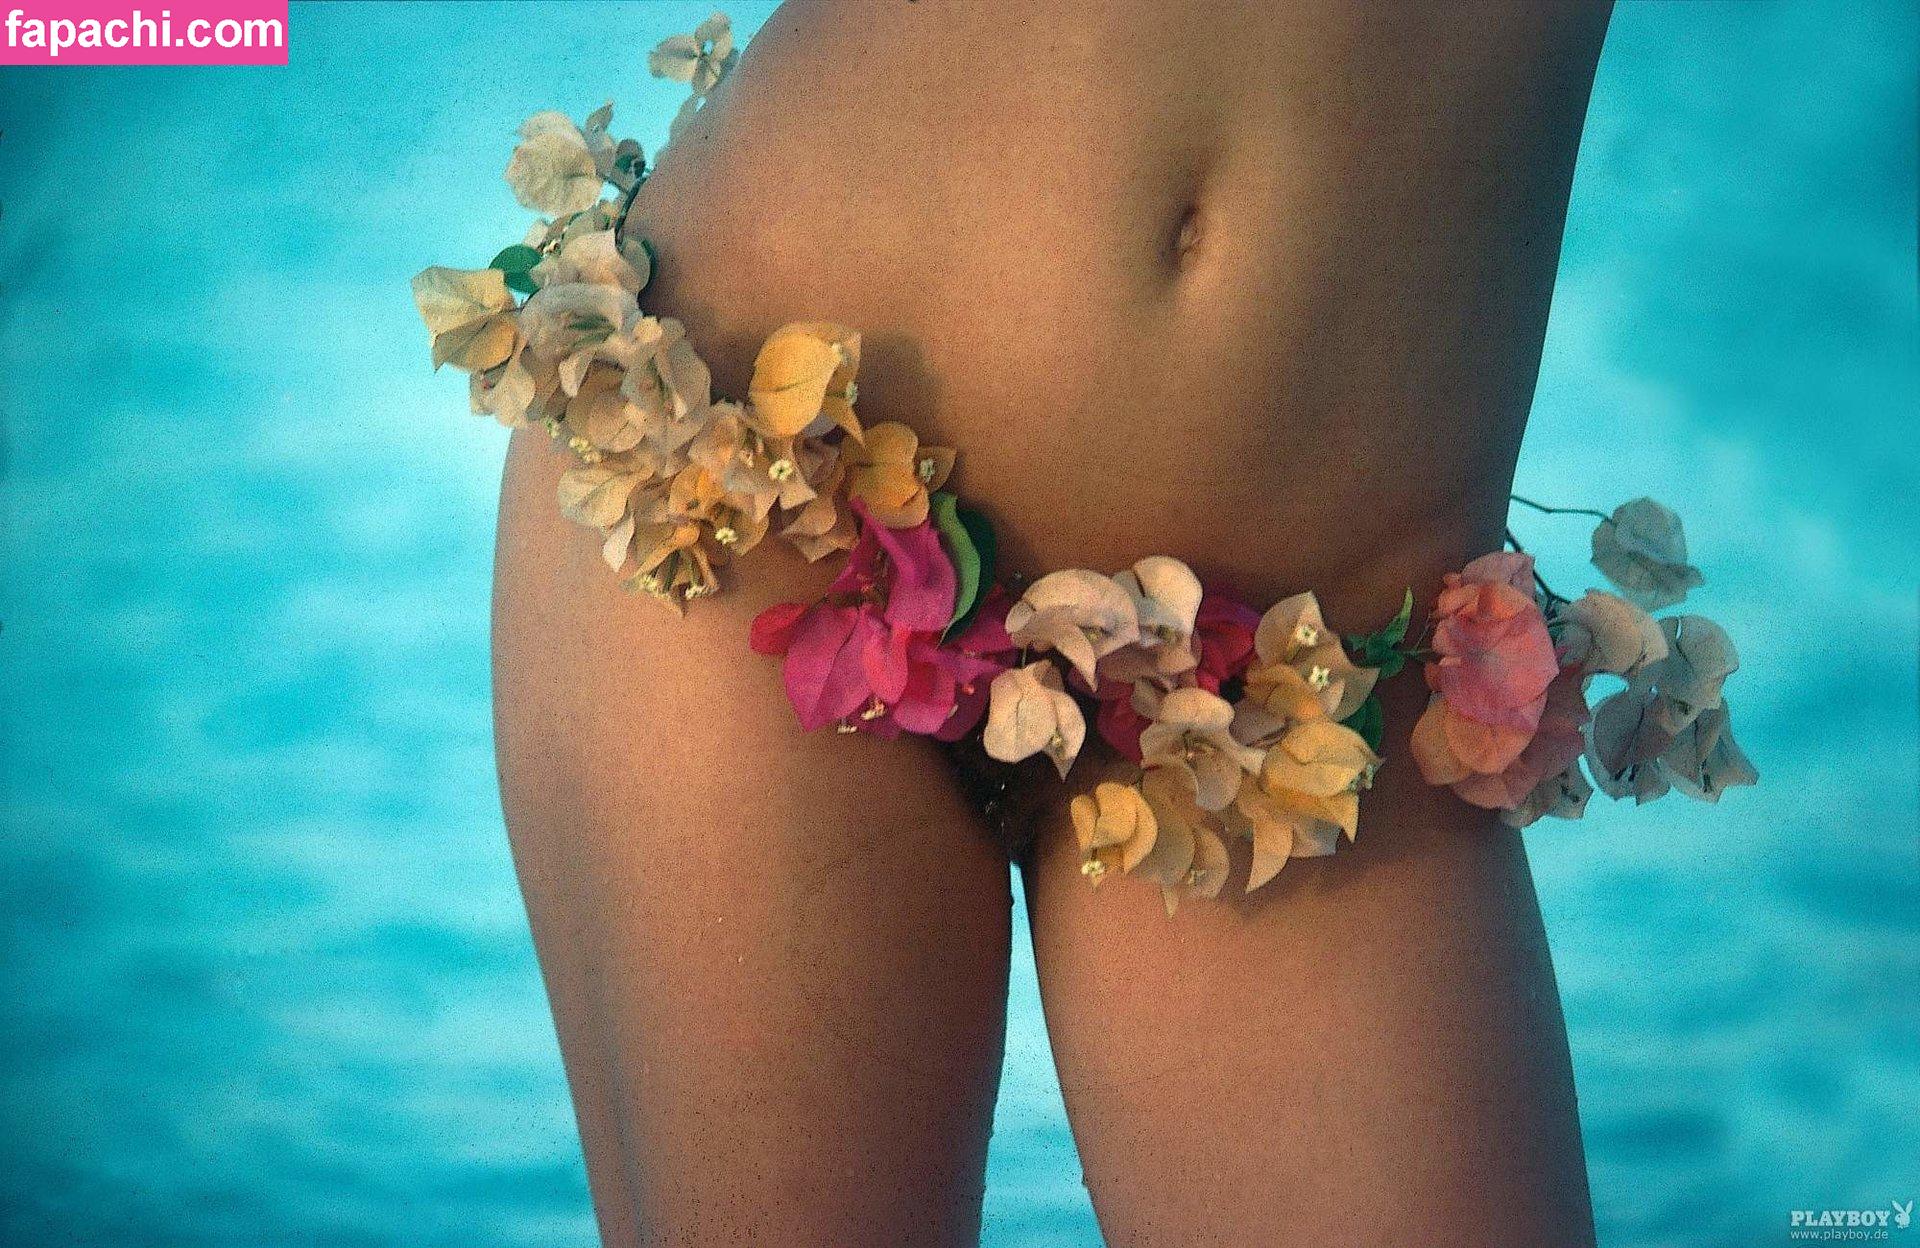 Vanessa Schreiber / vanessaschreiber leaked nude photo #0006 from OnlyFans/Patreon